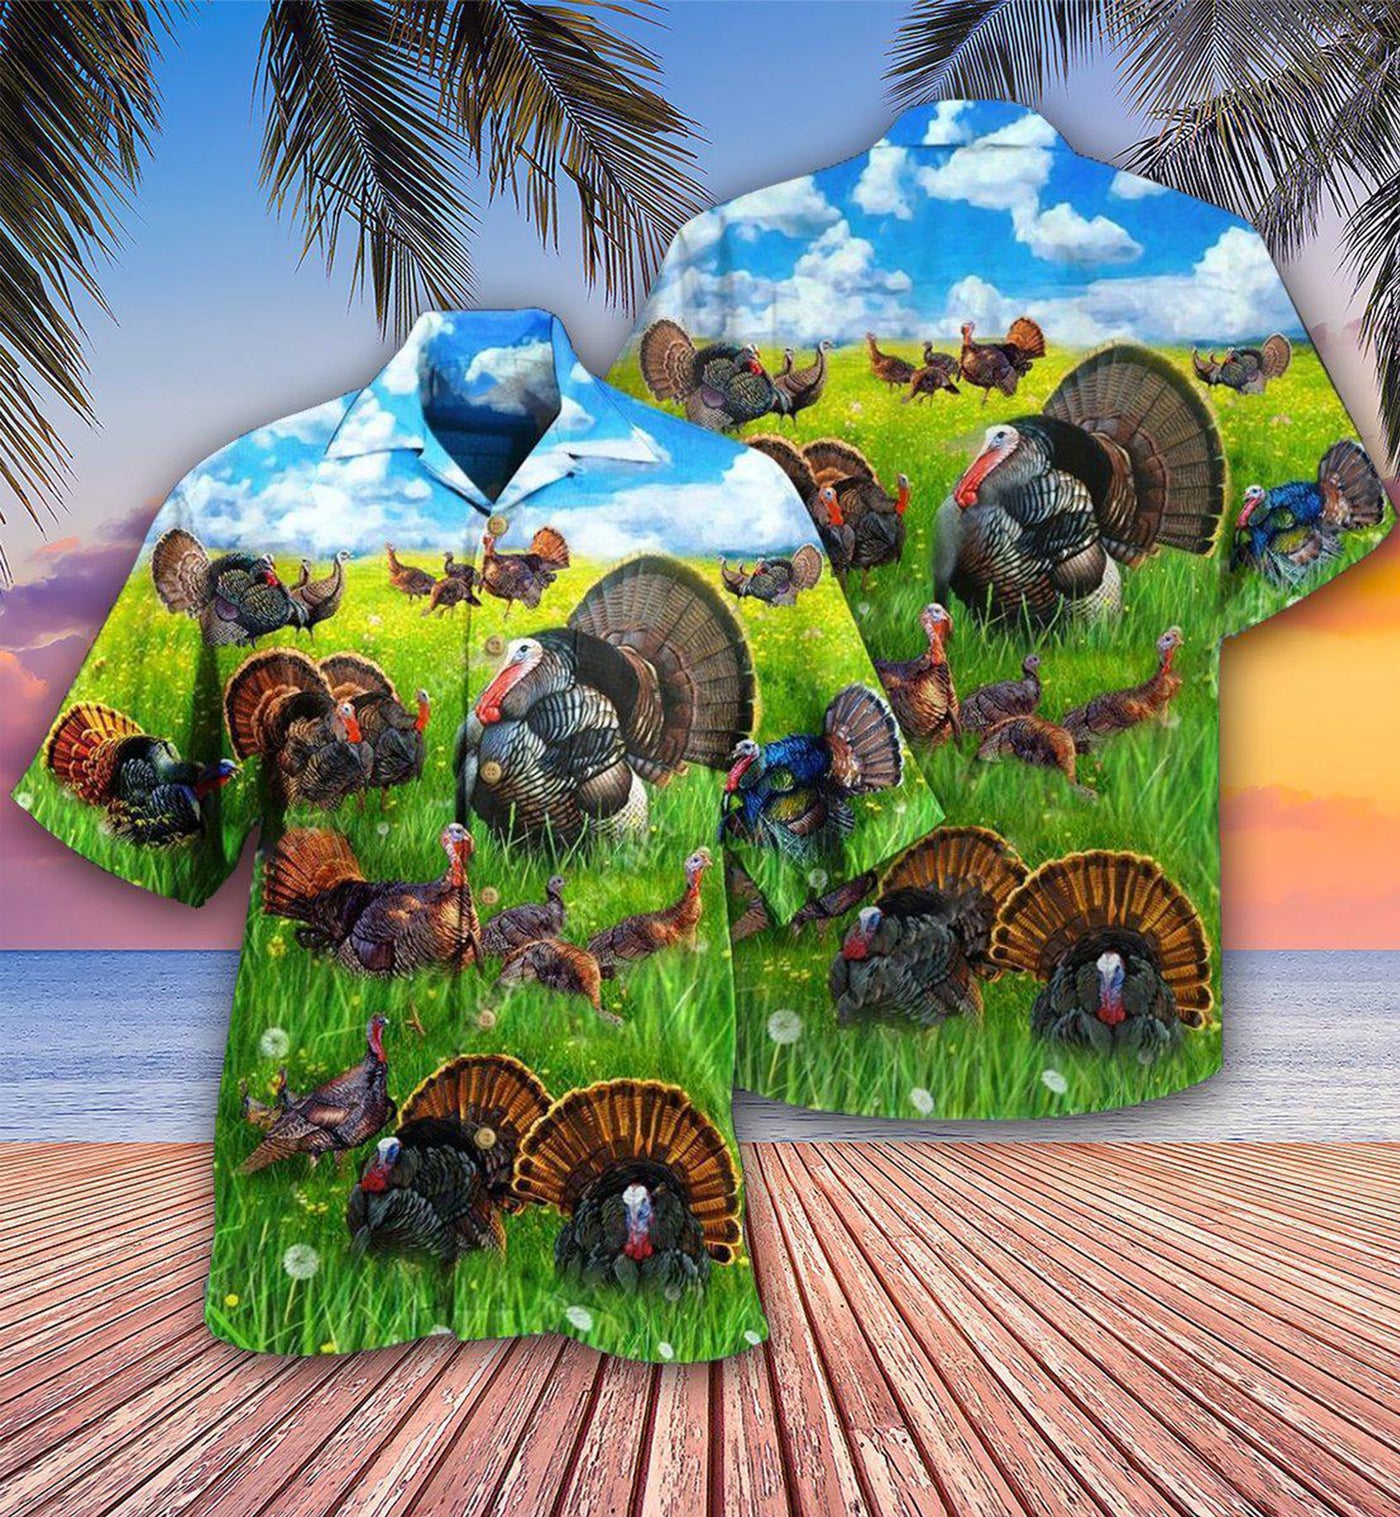 Turkey Animals Life Is Better With A Turkey - Hawaiian Shirt - Owls Matrix LTD